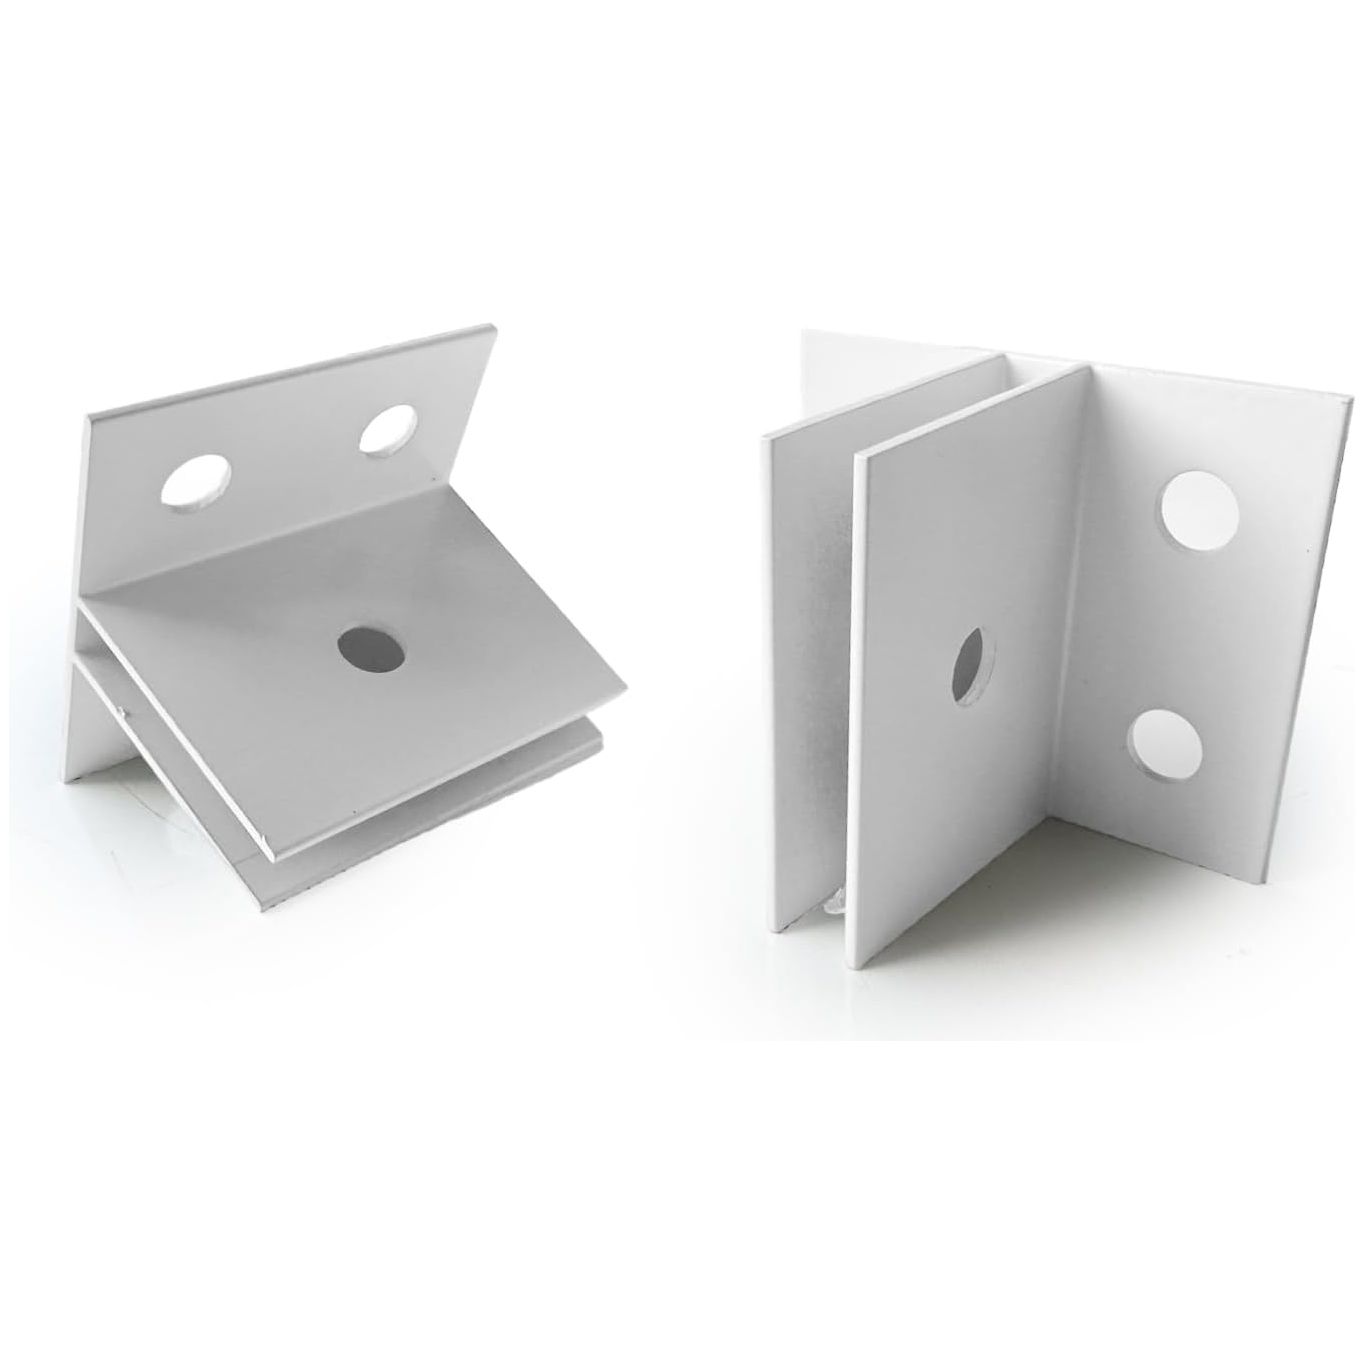 Versatile Mid-Panel Sign Bracket Set - Sleek White Aluminum for Easy Installation